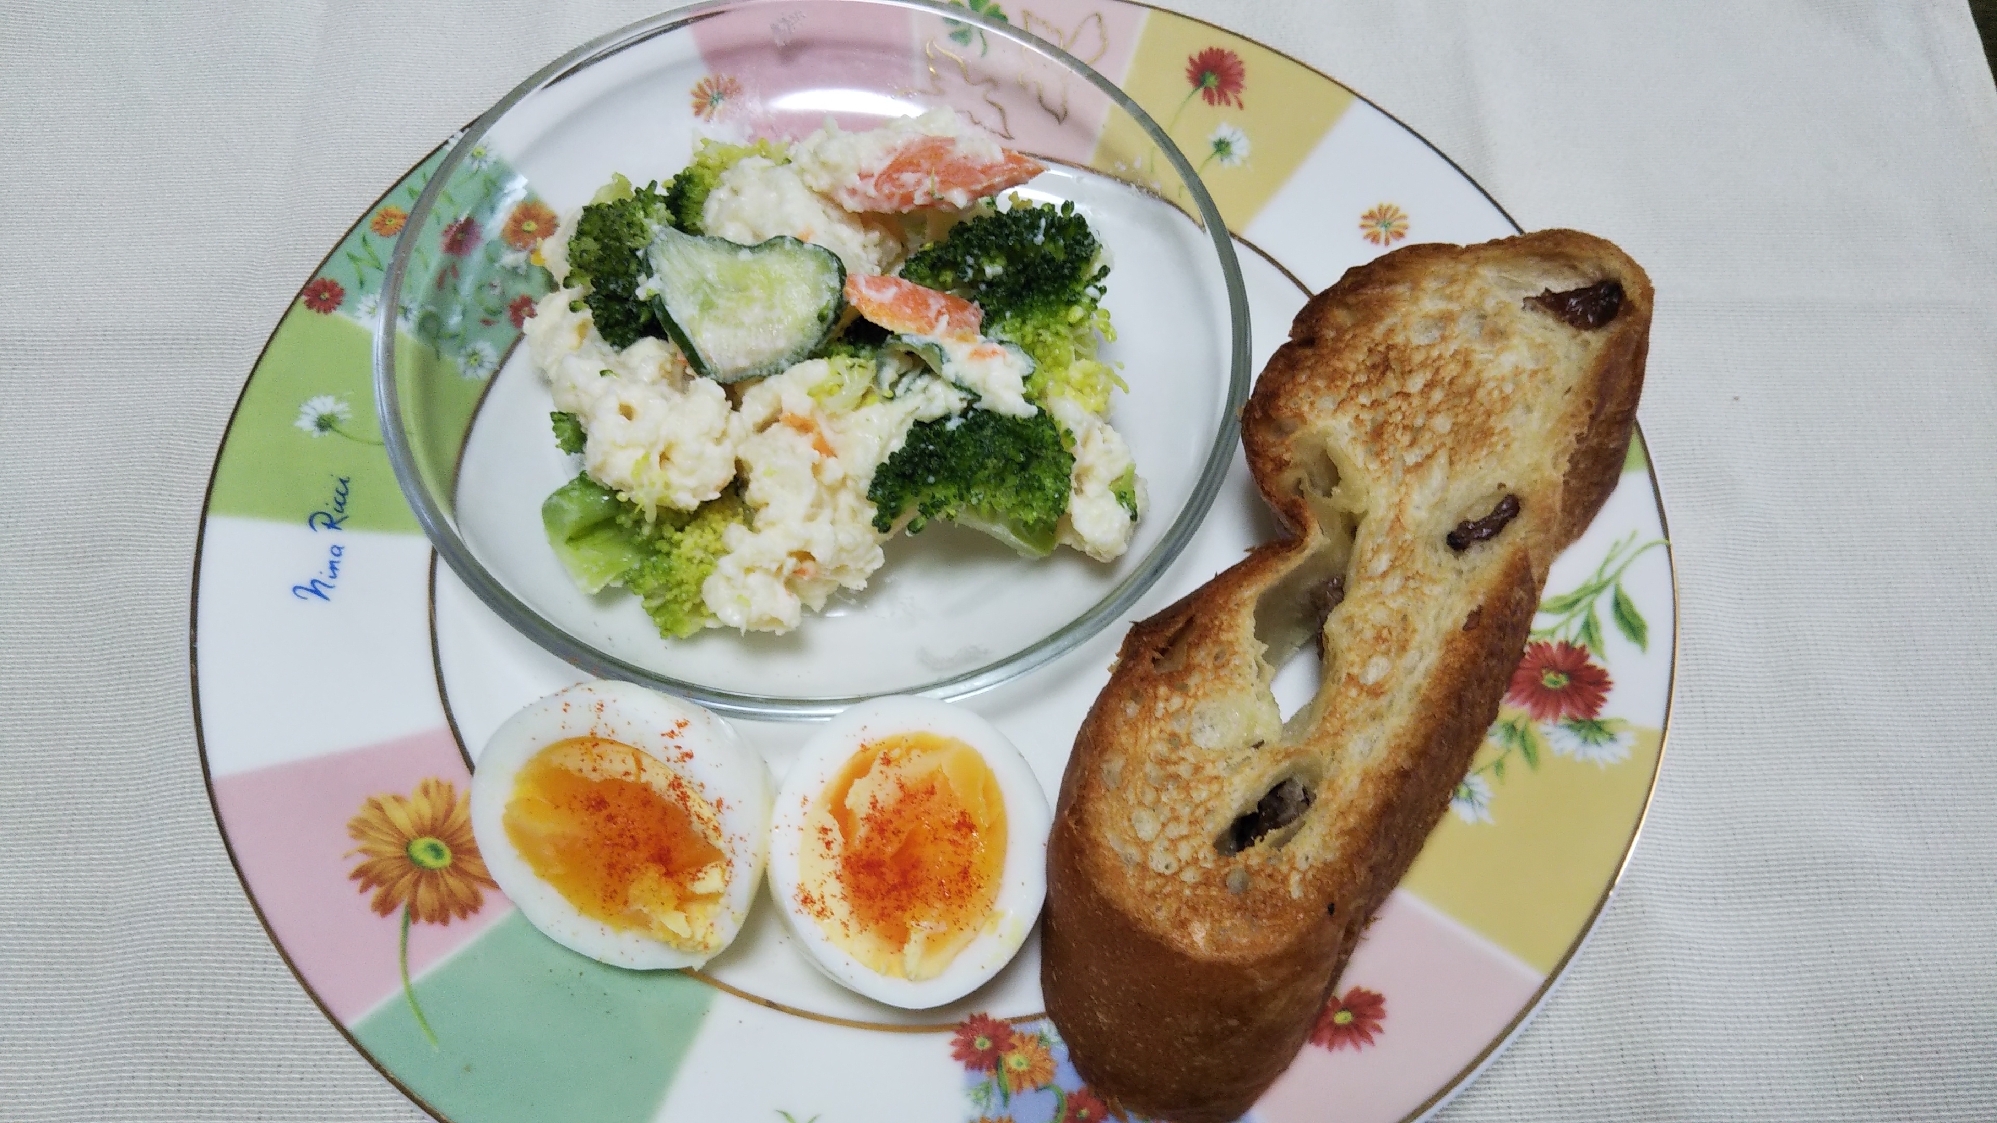 ポテサラブロッコリー和えとトーストと茹で卵の朝食☆